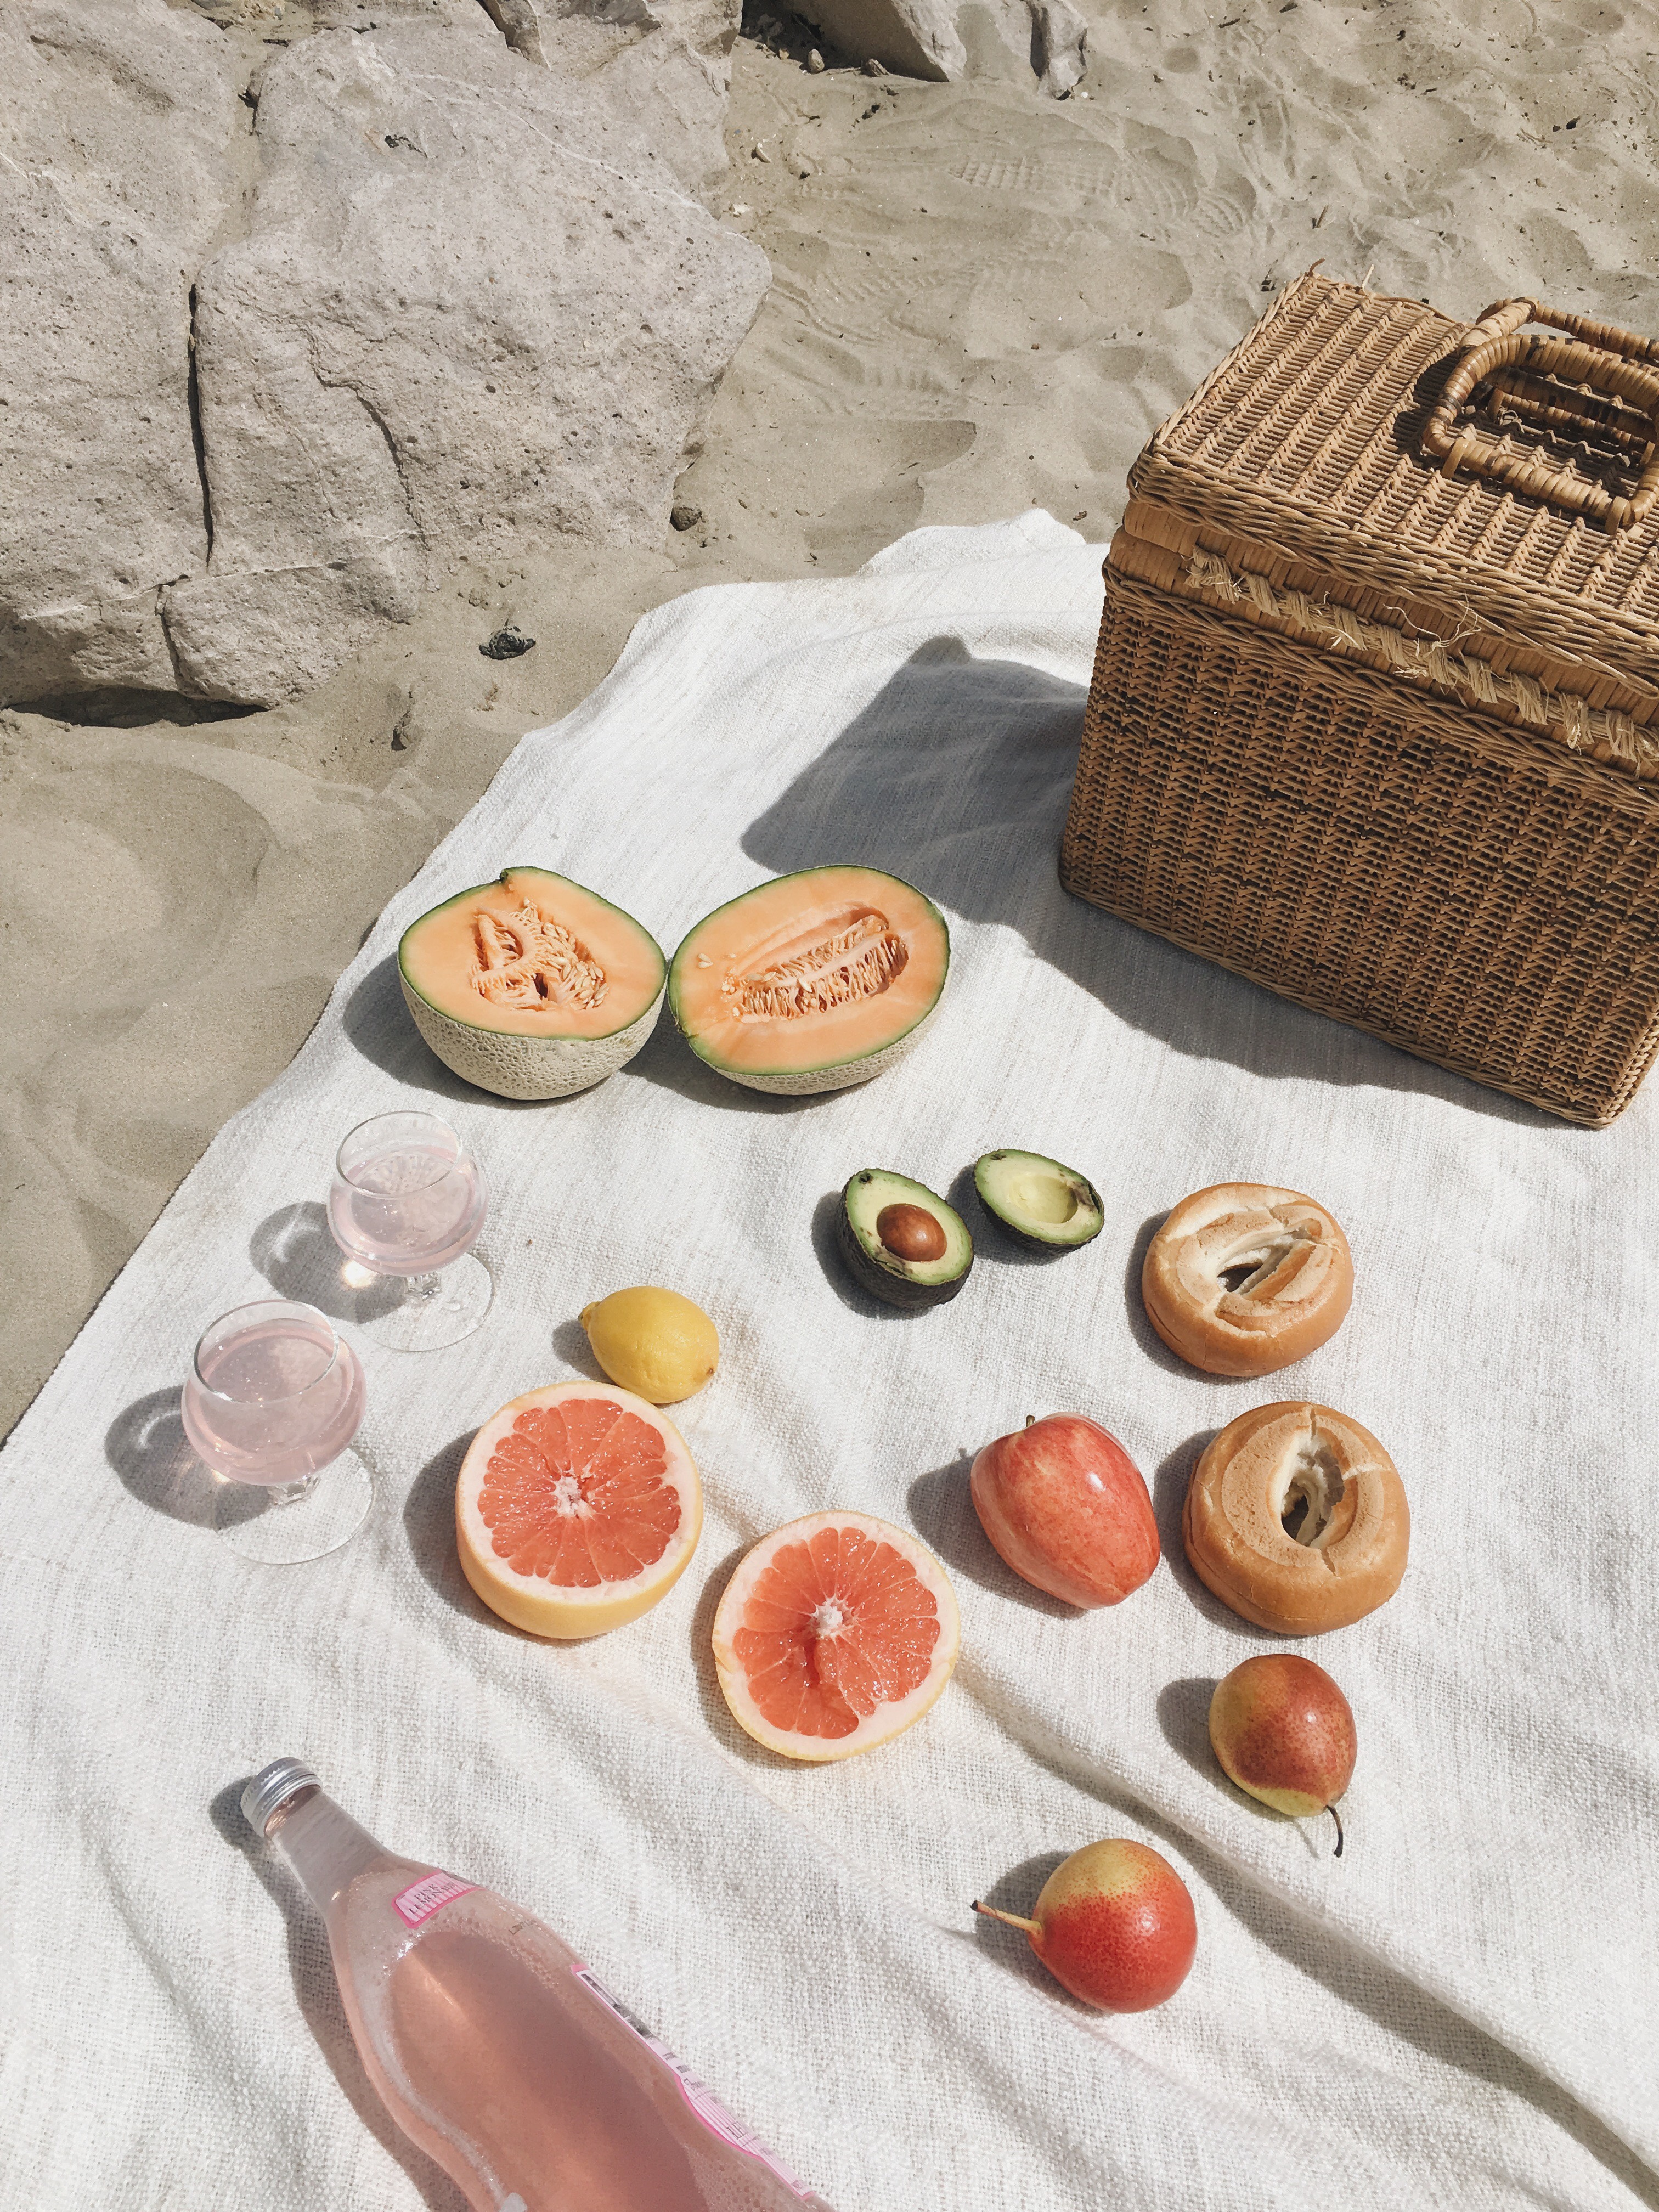 Beach picnic ideas